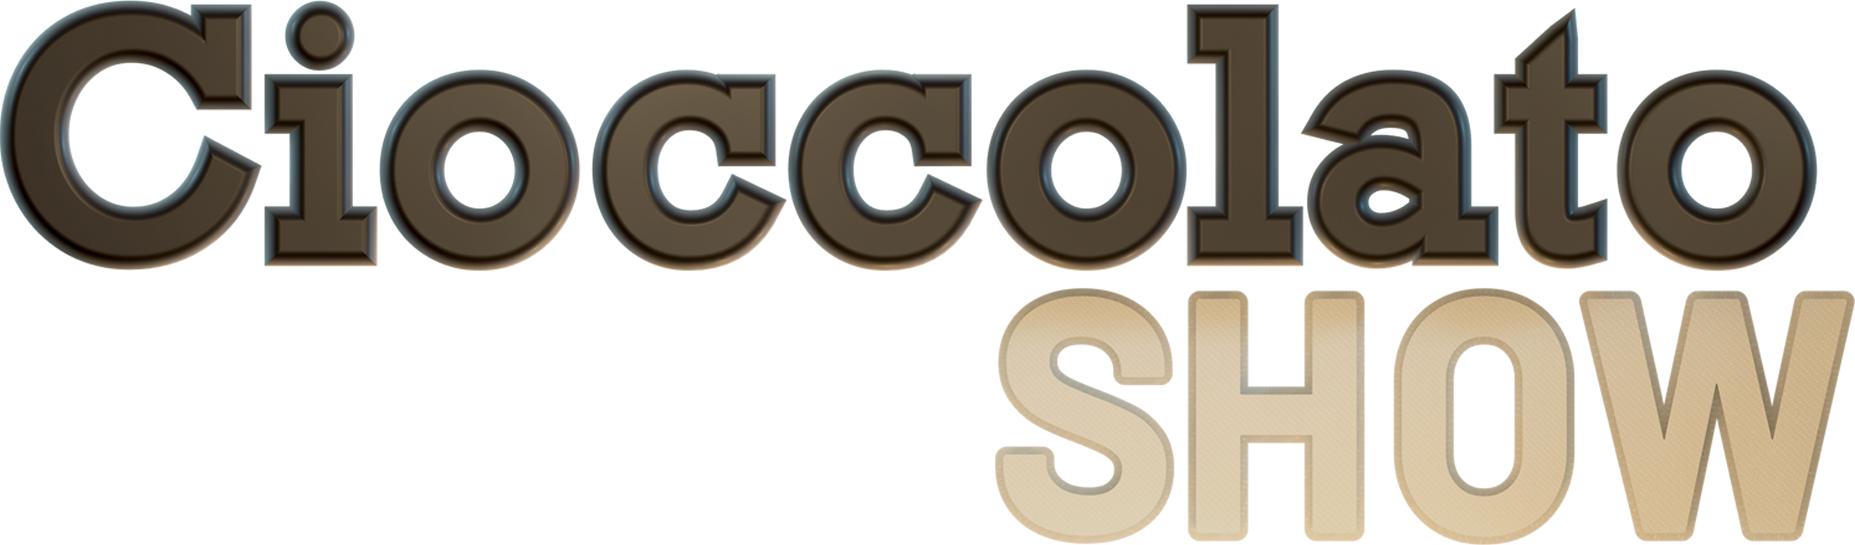 logo Cioccolato Show